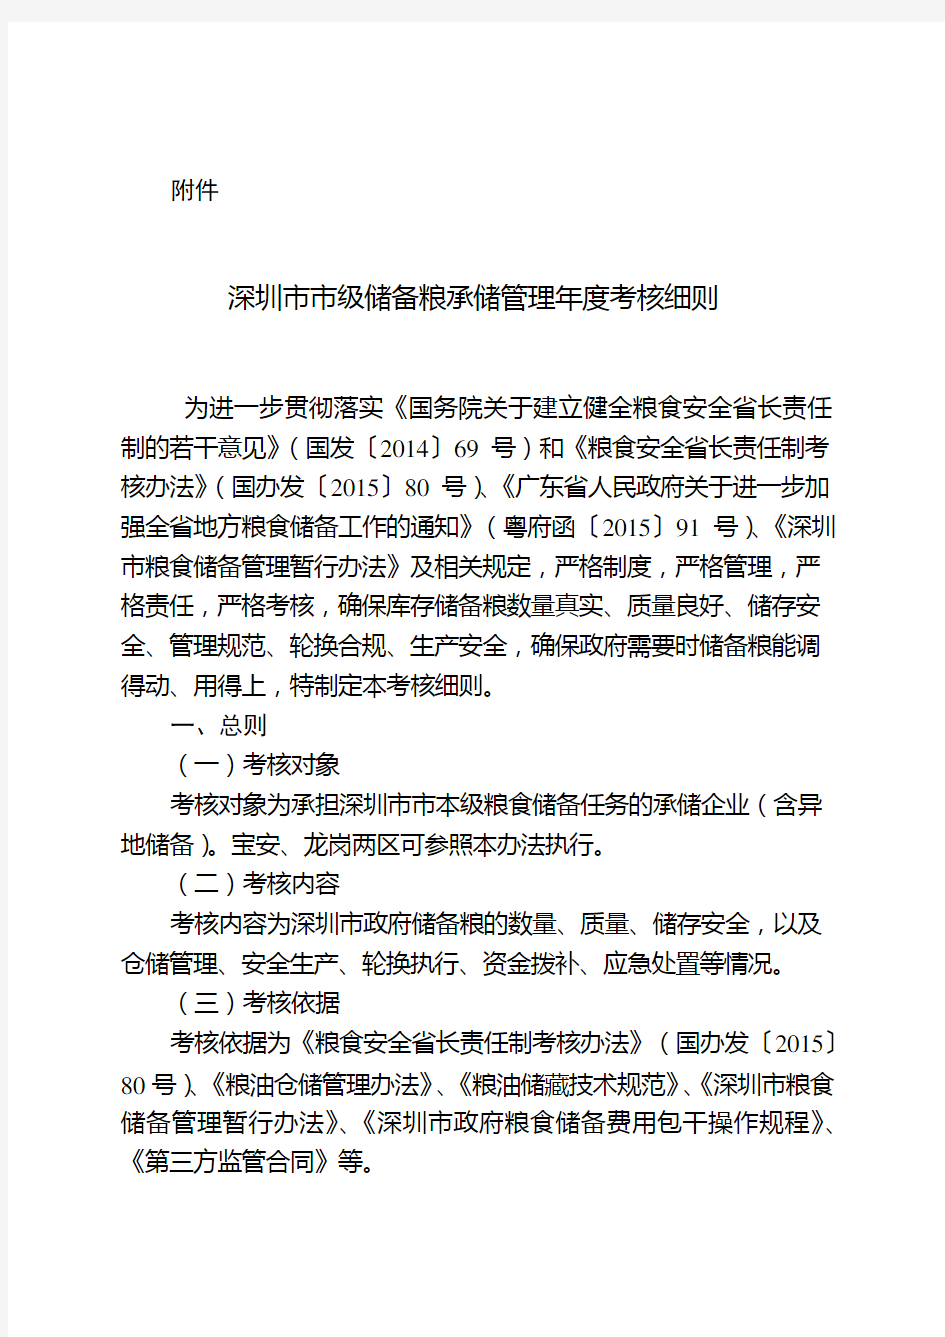 深圳粮食储备承储管理年考核细则征求意见稿